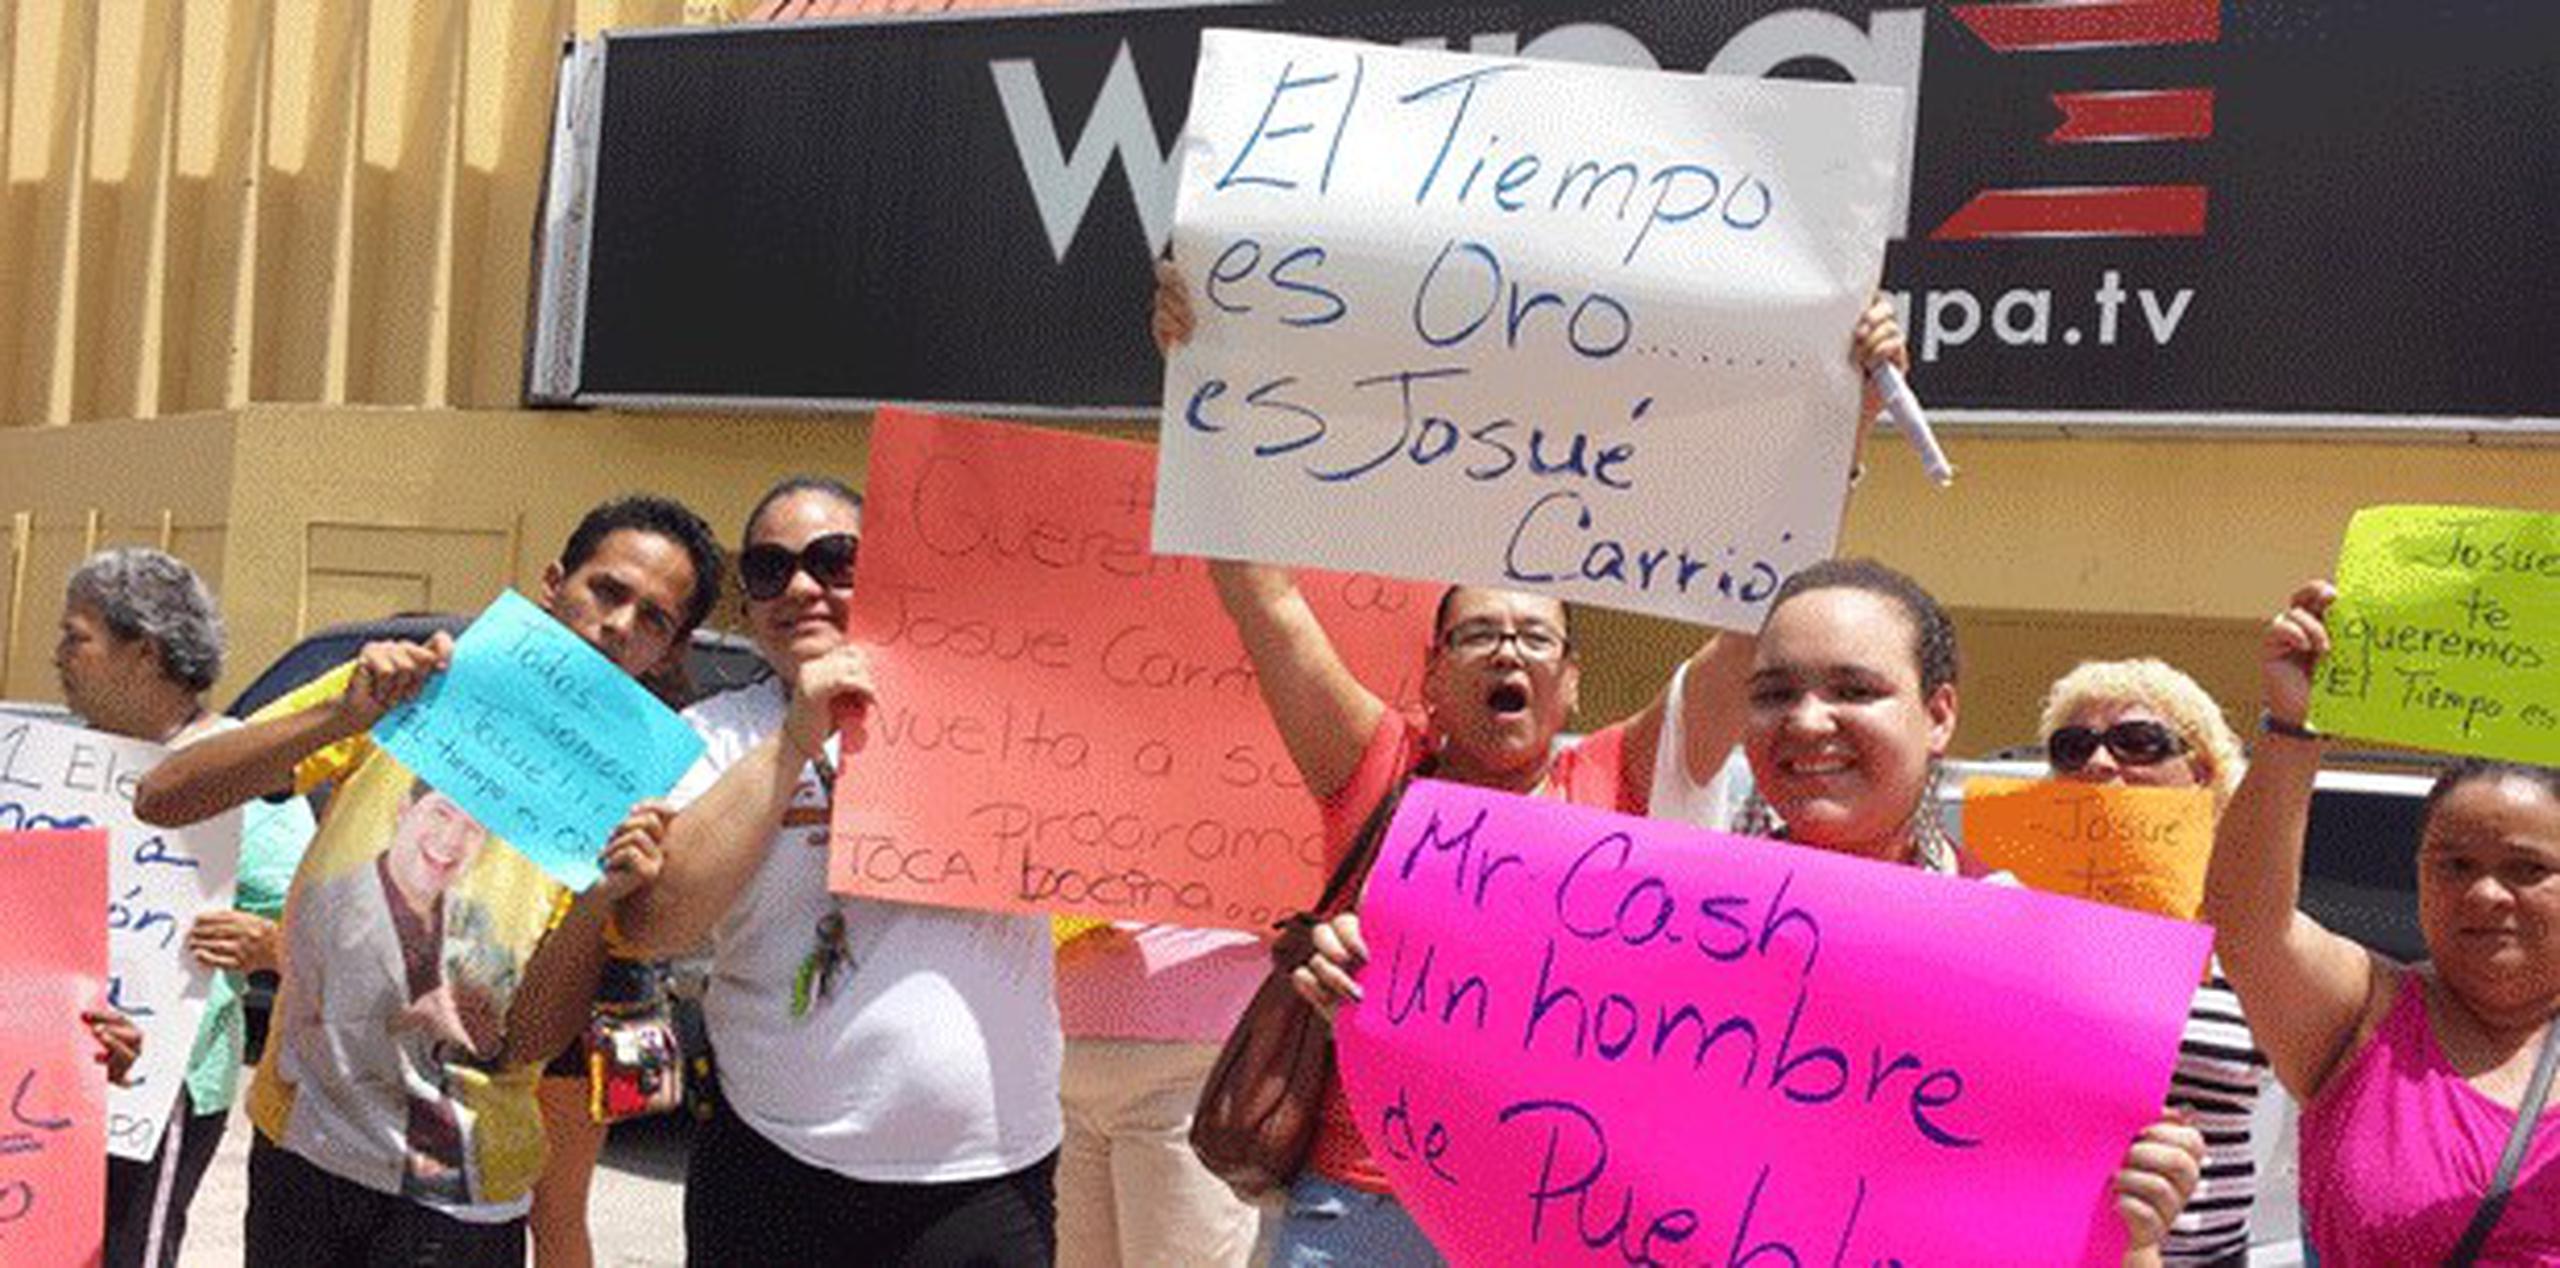 Un pequeño grupo de manifestantes mostró su apoyo a Josué Carrión en las inmediaciones del canal.(ANGEL.RIVERA@GFRMEDIA.COM)